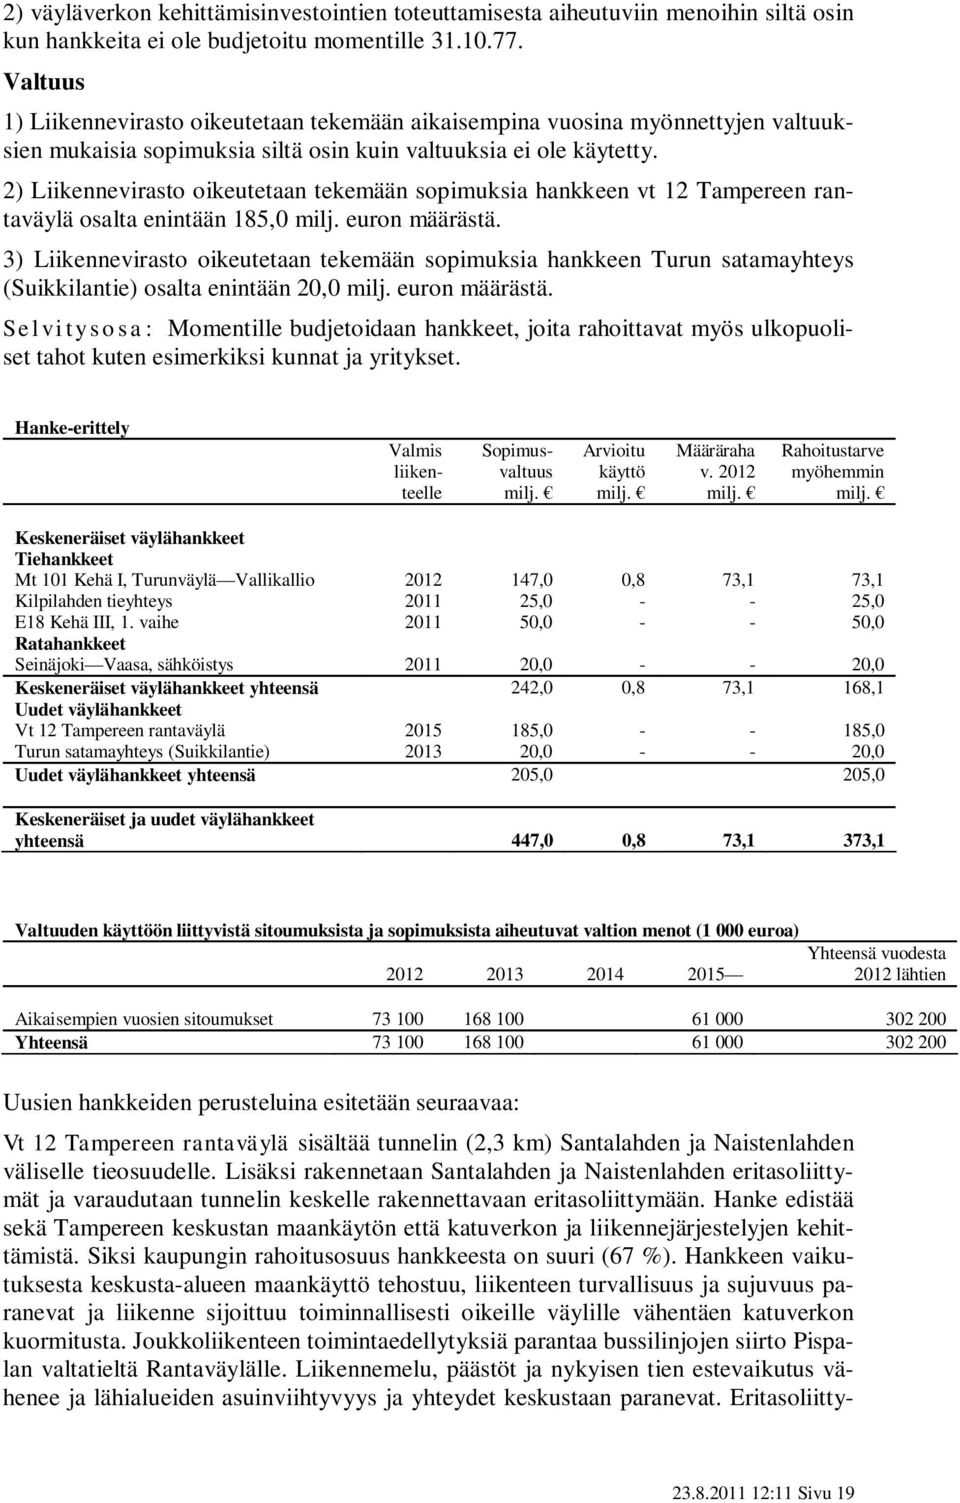 2) Liikennevirasto oikeutetaan tekemään sopimuksia hankkeen vt 12 Tampereen rantaväylä osalta enintään 185,0 milj. euron määrästä.